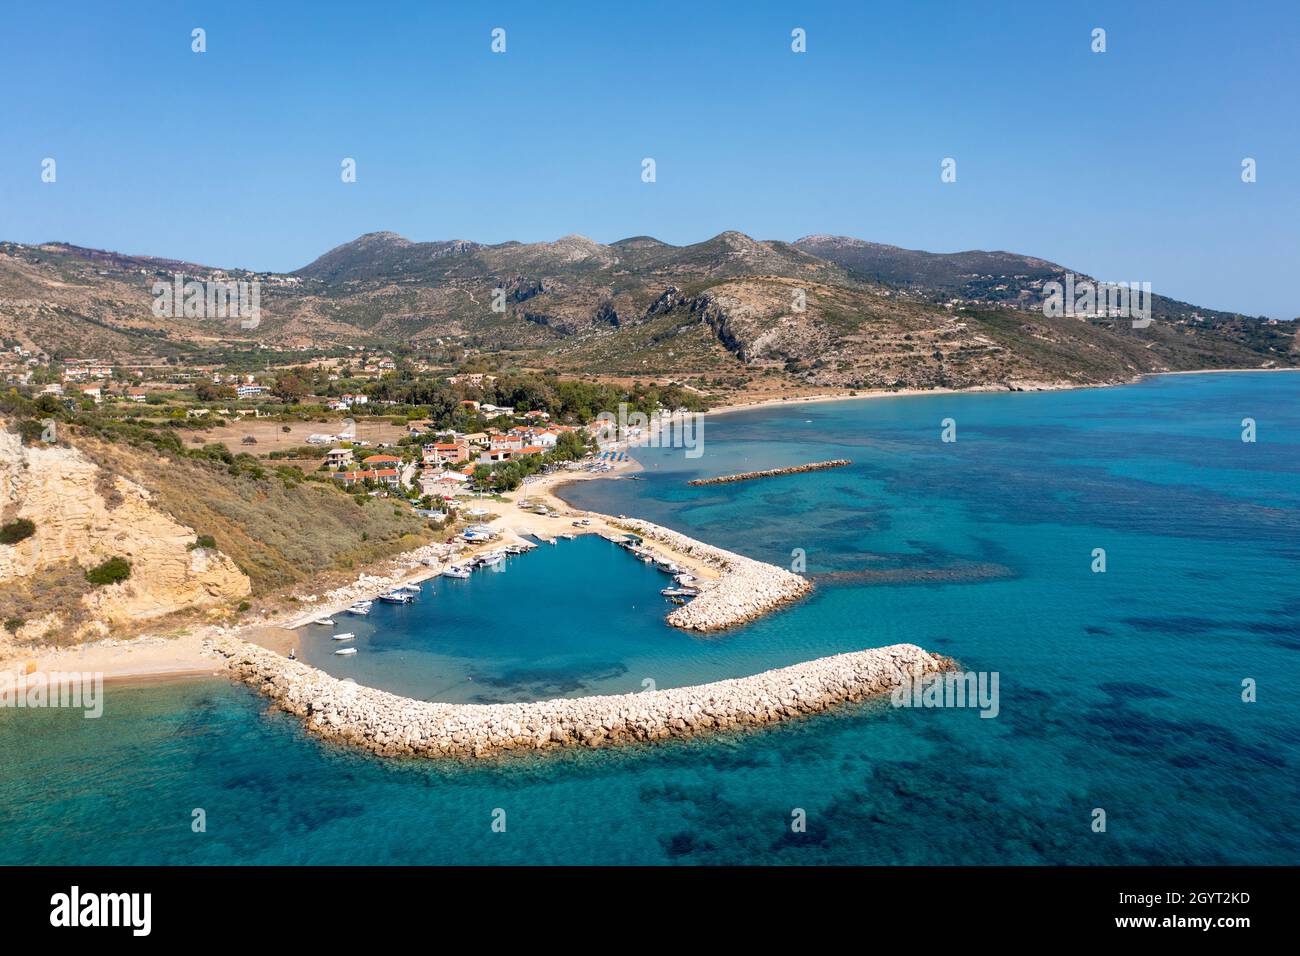 Vista aérea del paisaje costero del puerto de Katelios en la costa sur de Kefalonia, Islas Jónicas, Grecia Foto de stock